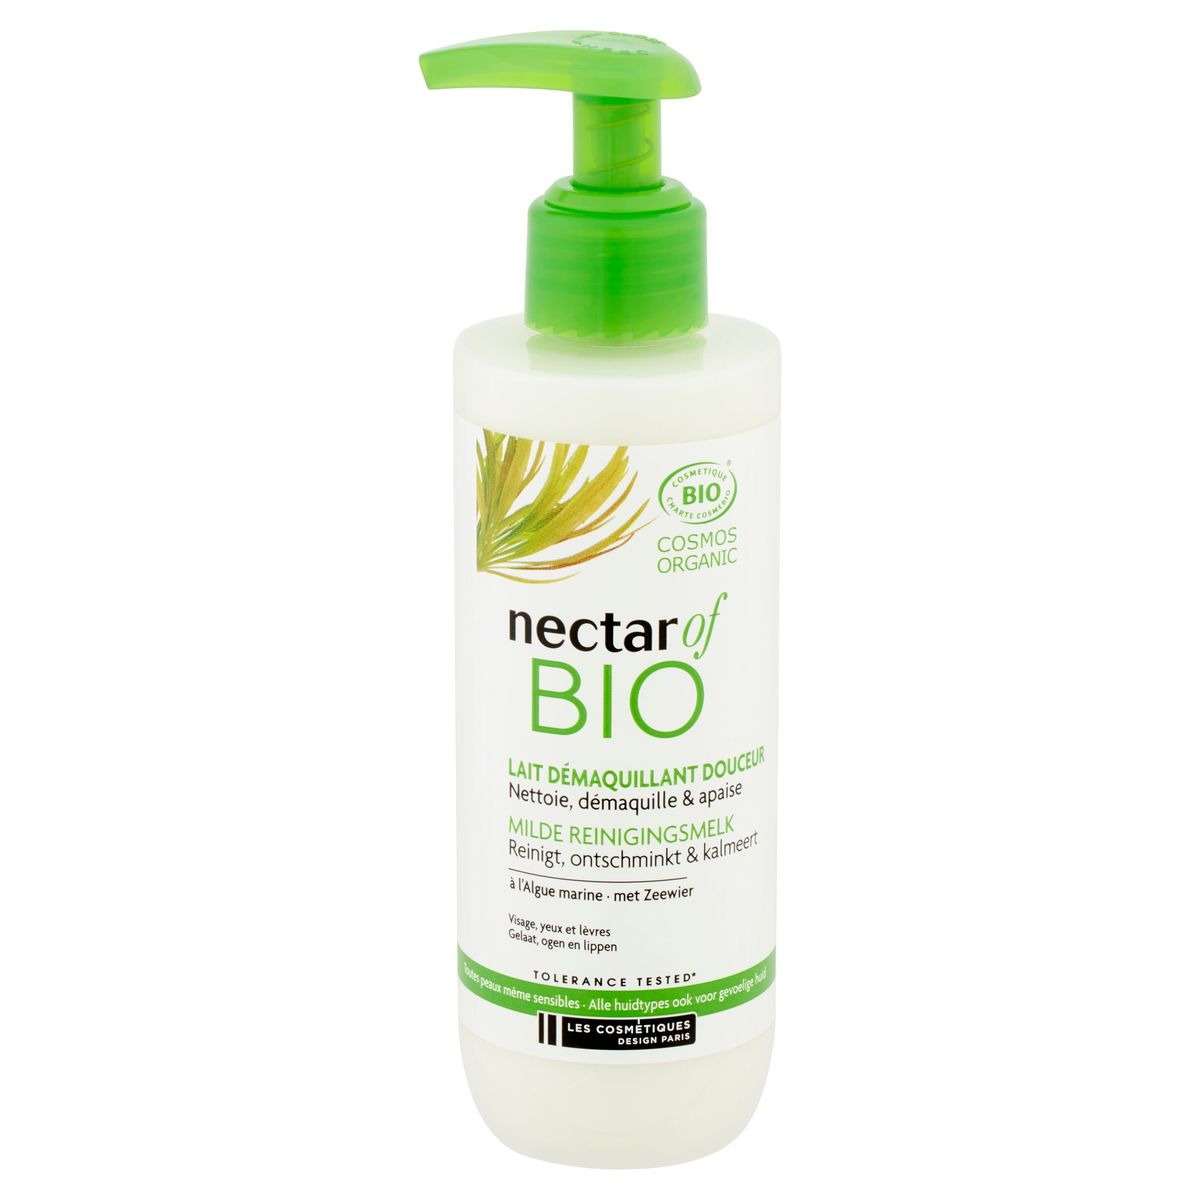 Nectar of Bio Milde Reinigingsmelk 200 ml